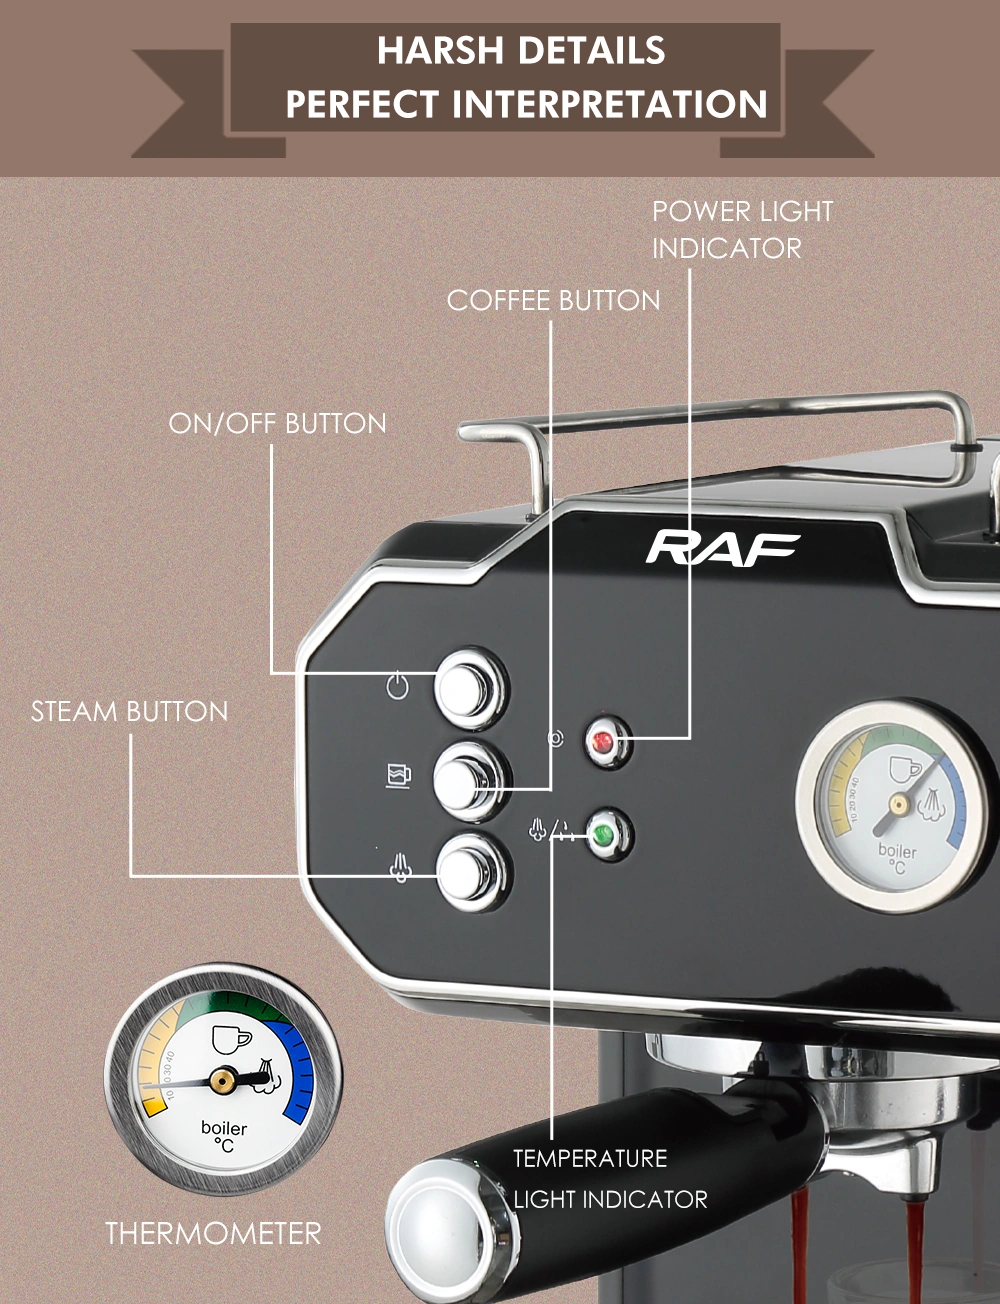 Coffee, Espresso & Tea – RAF Appliances